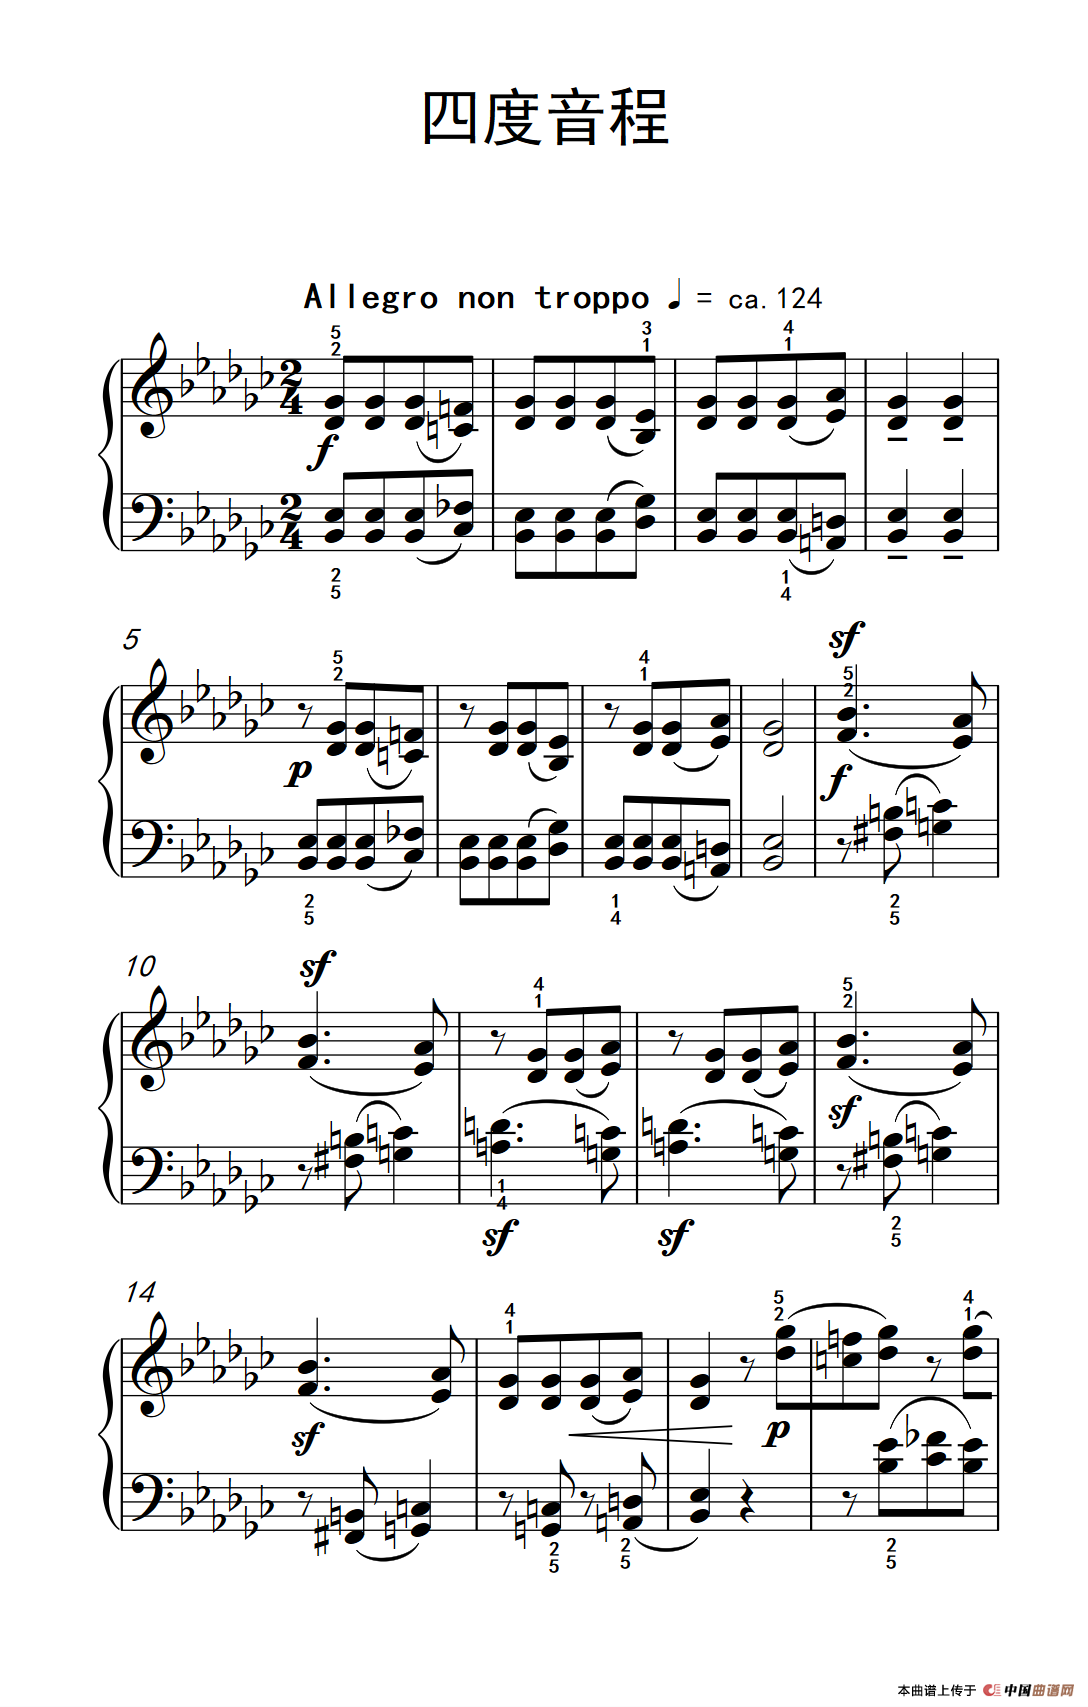 《四度音程》钢琴曲谱图分享